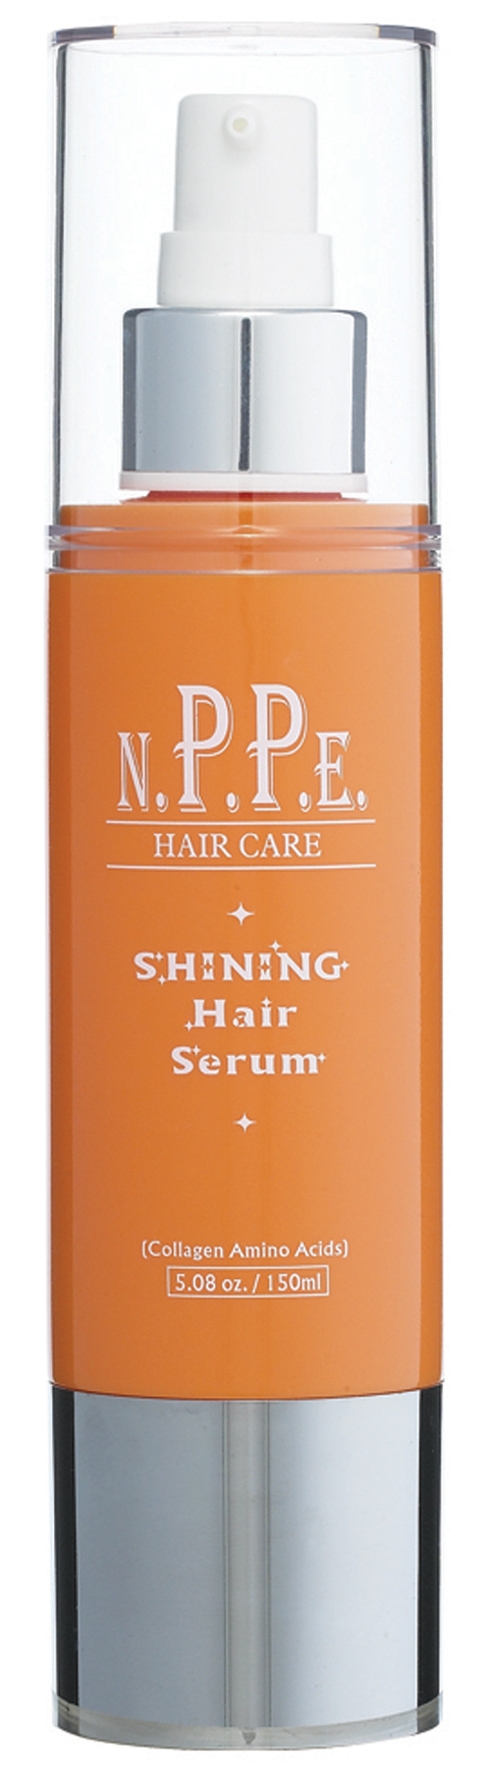 Indicado para cabelos danificados ou com tratamentos químicos, o Shining Hair Serum promete aumentar   o brilho e maciez assim que aplicado. É indicado para uso diário e sai por R$ 104